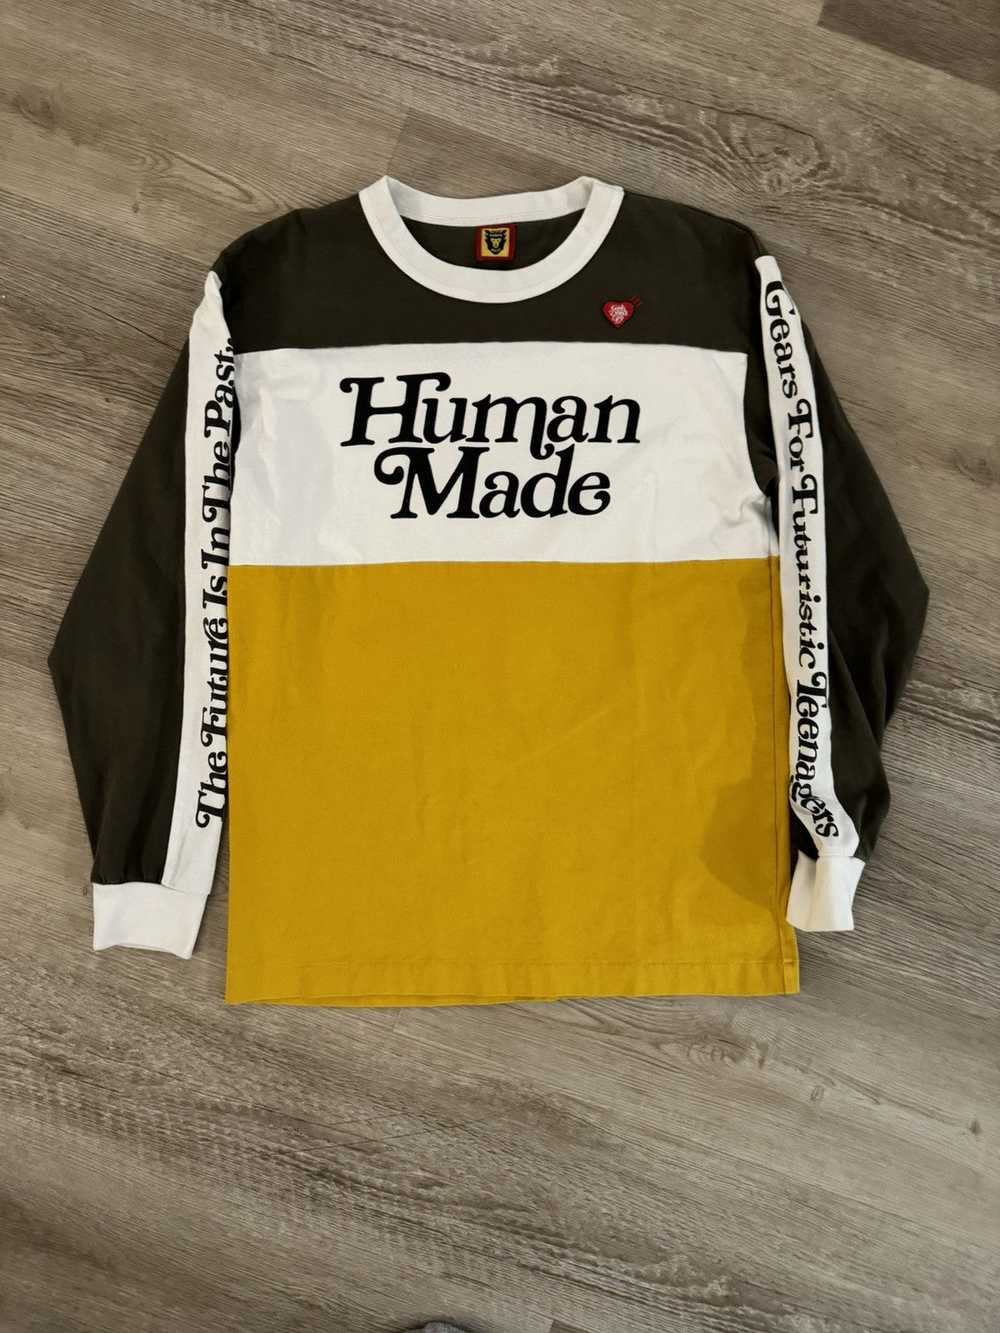 Human Made Human Made x Girls Don’t Cry BMX shirt - image 1